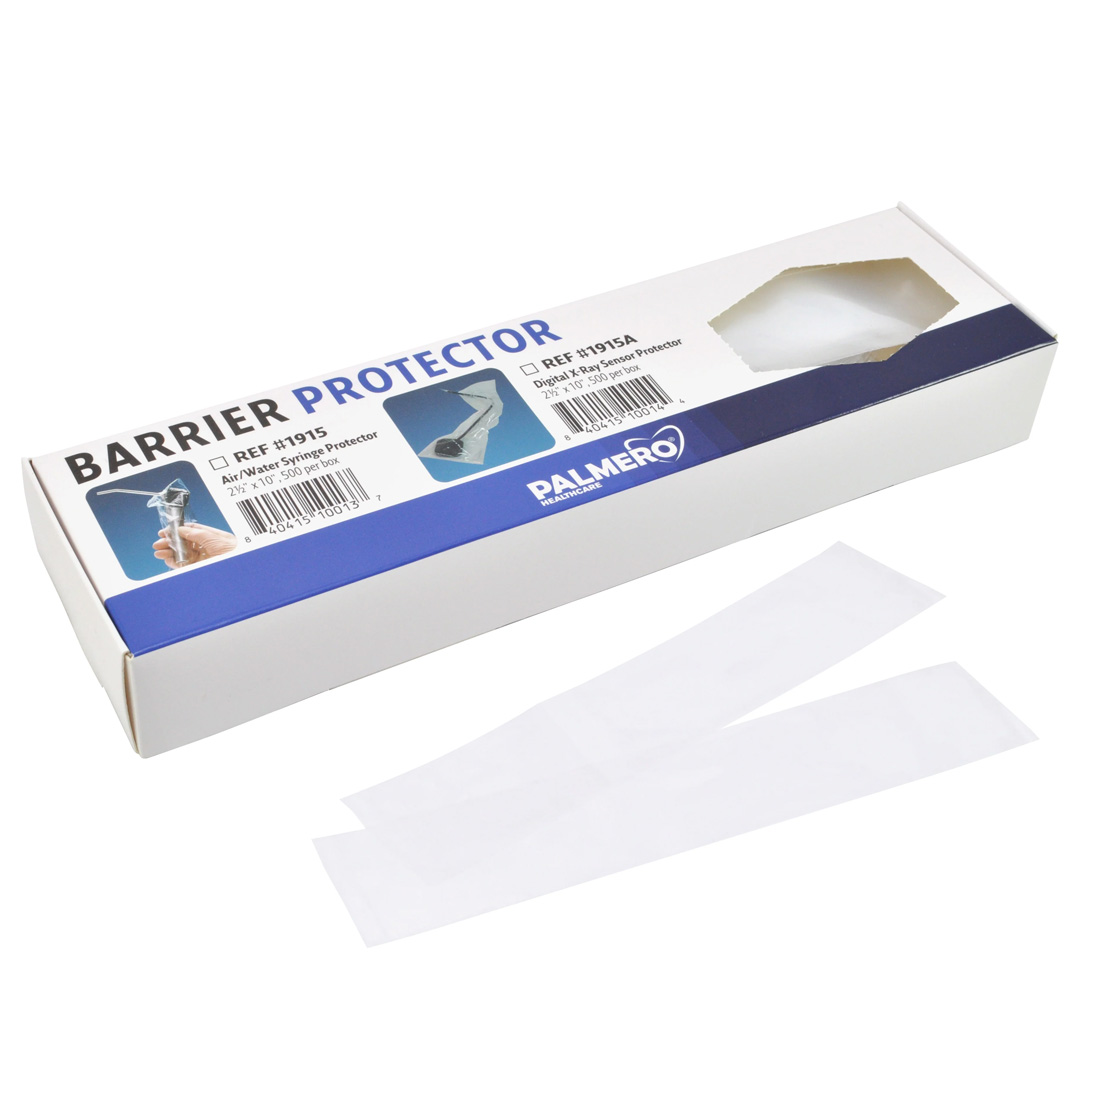 Air/Water Syringe Protectors, 2.5" x 10", 500/Box